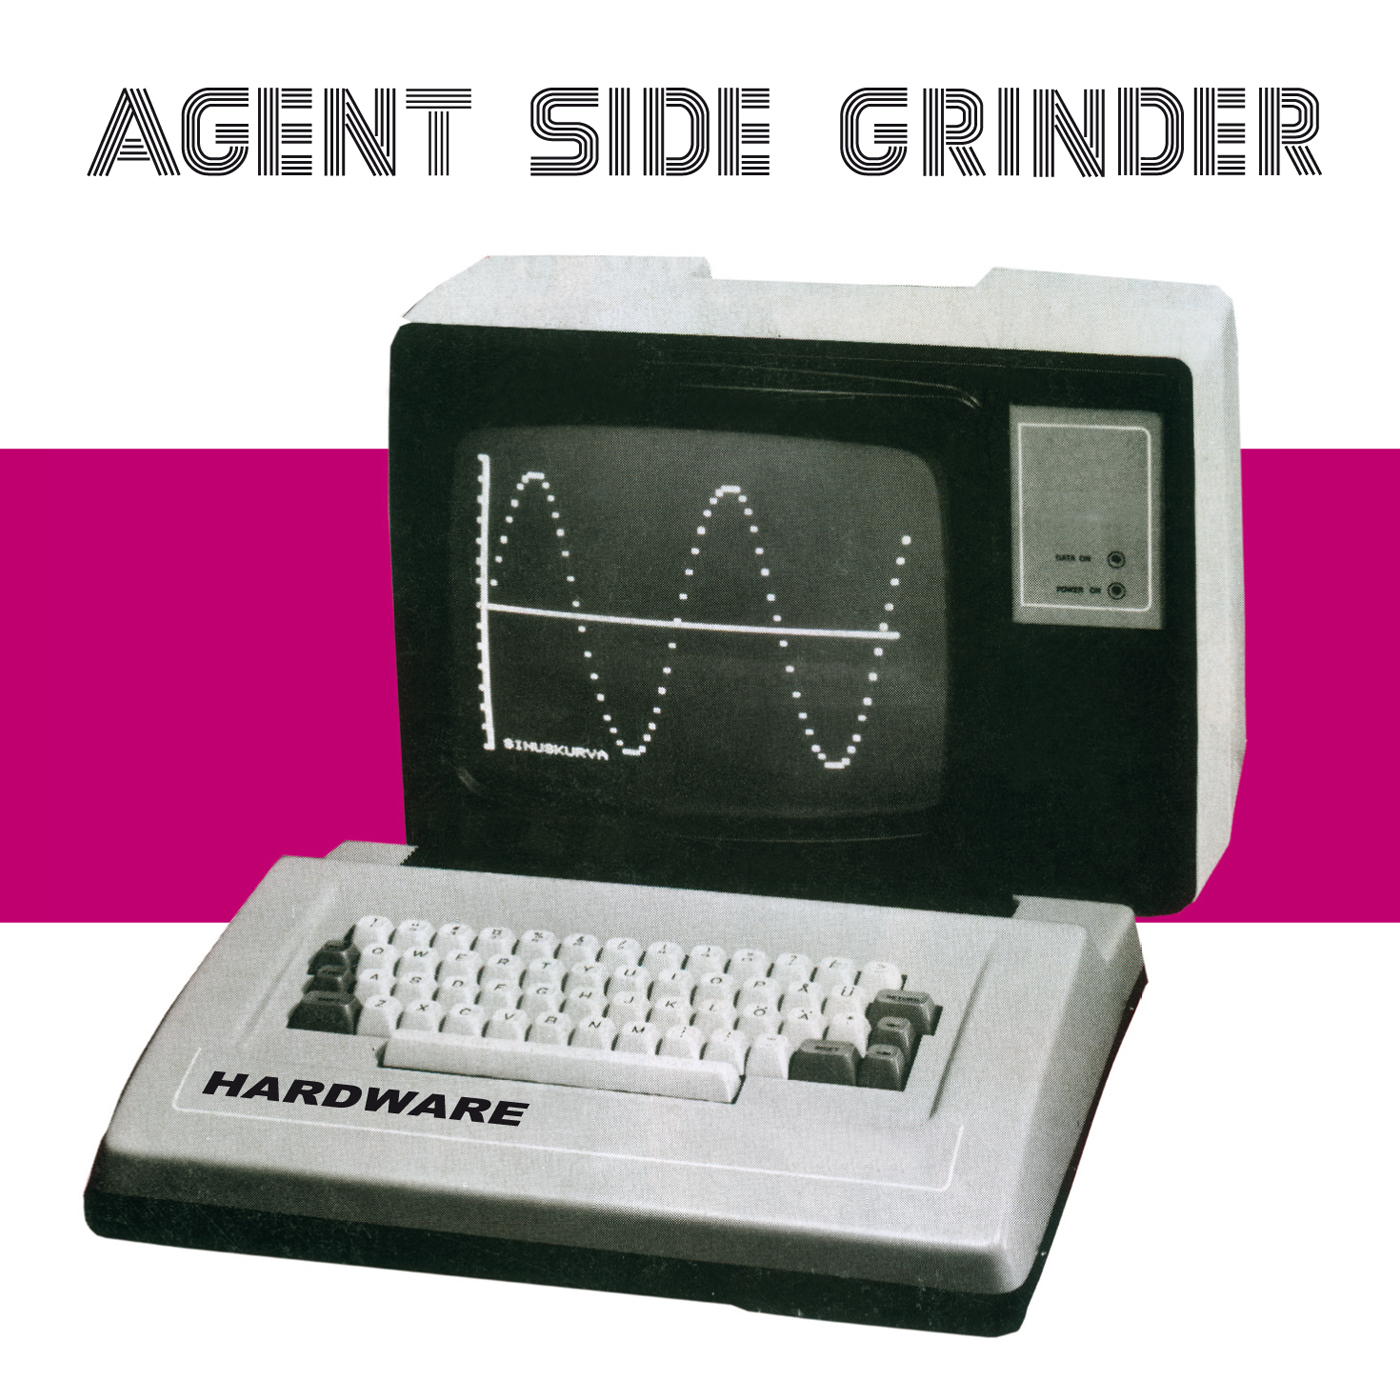 Agent Side Grinder - Hardware - CD